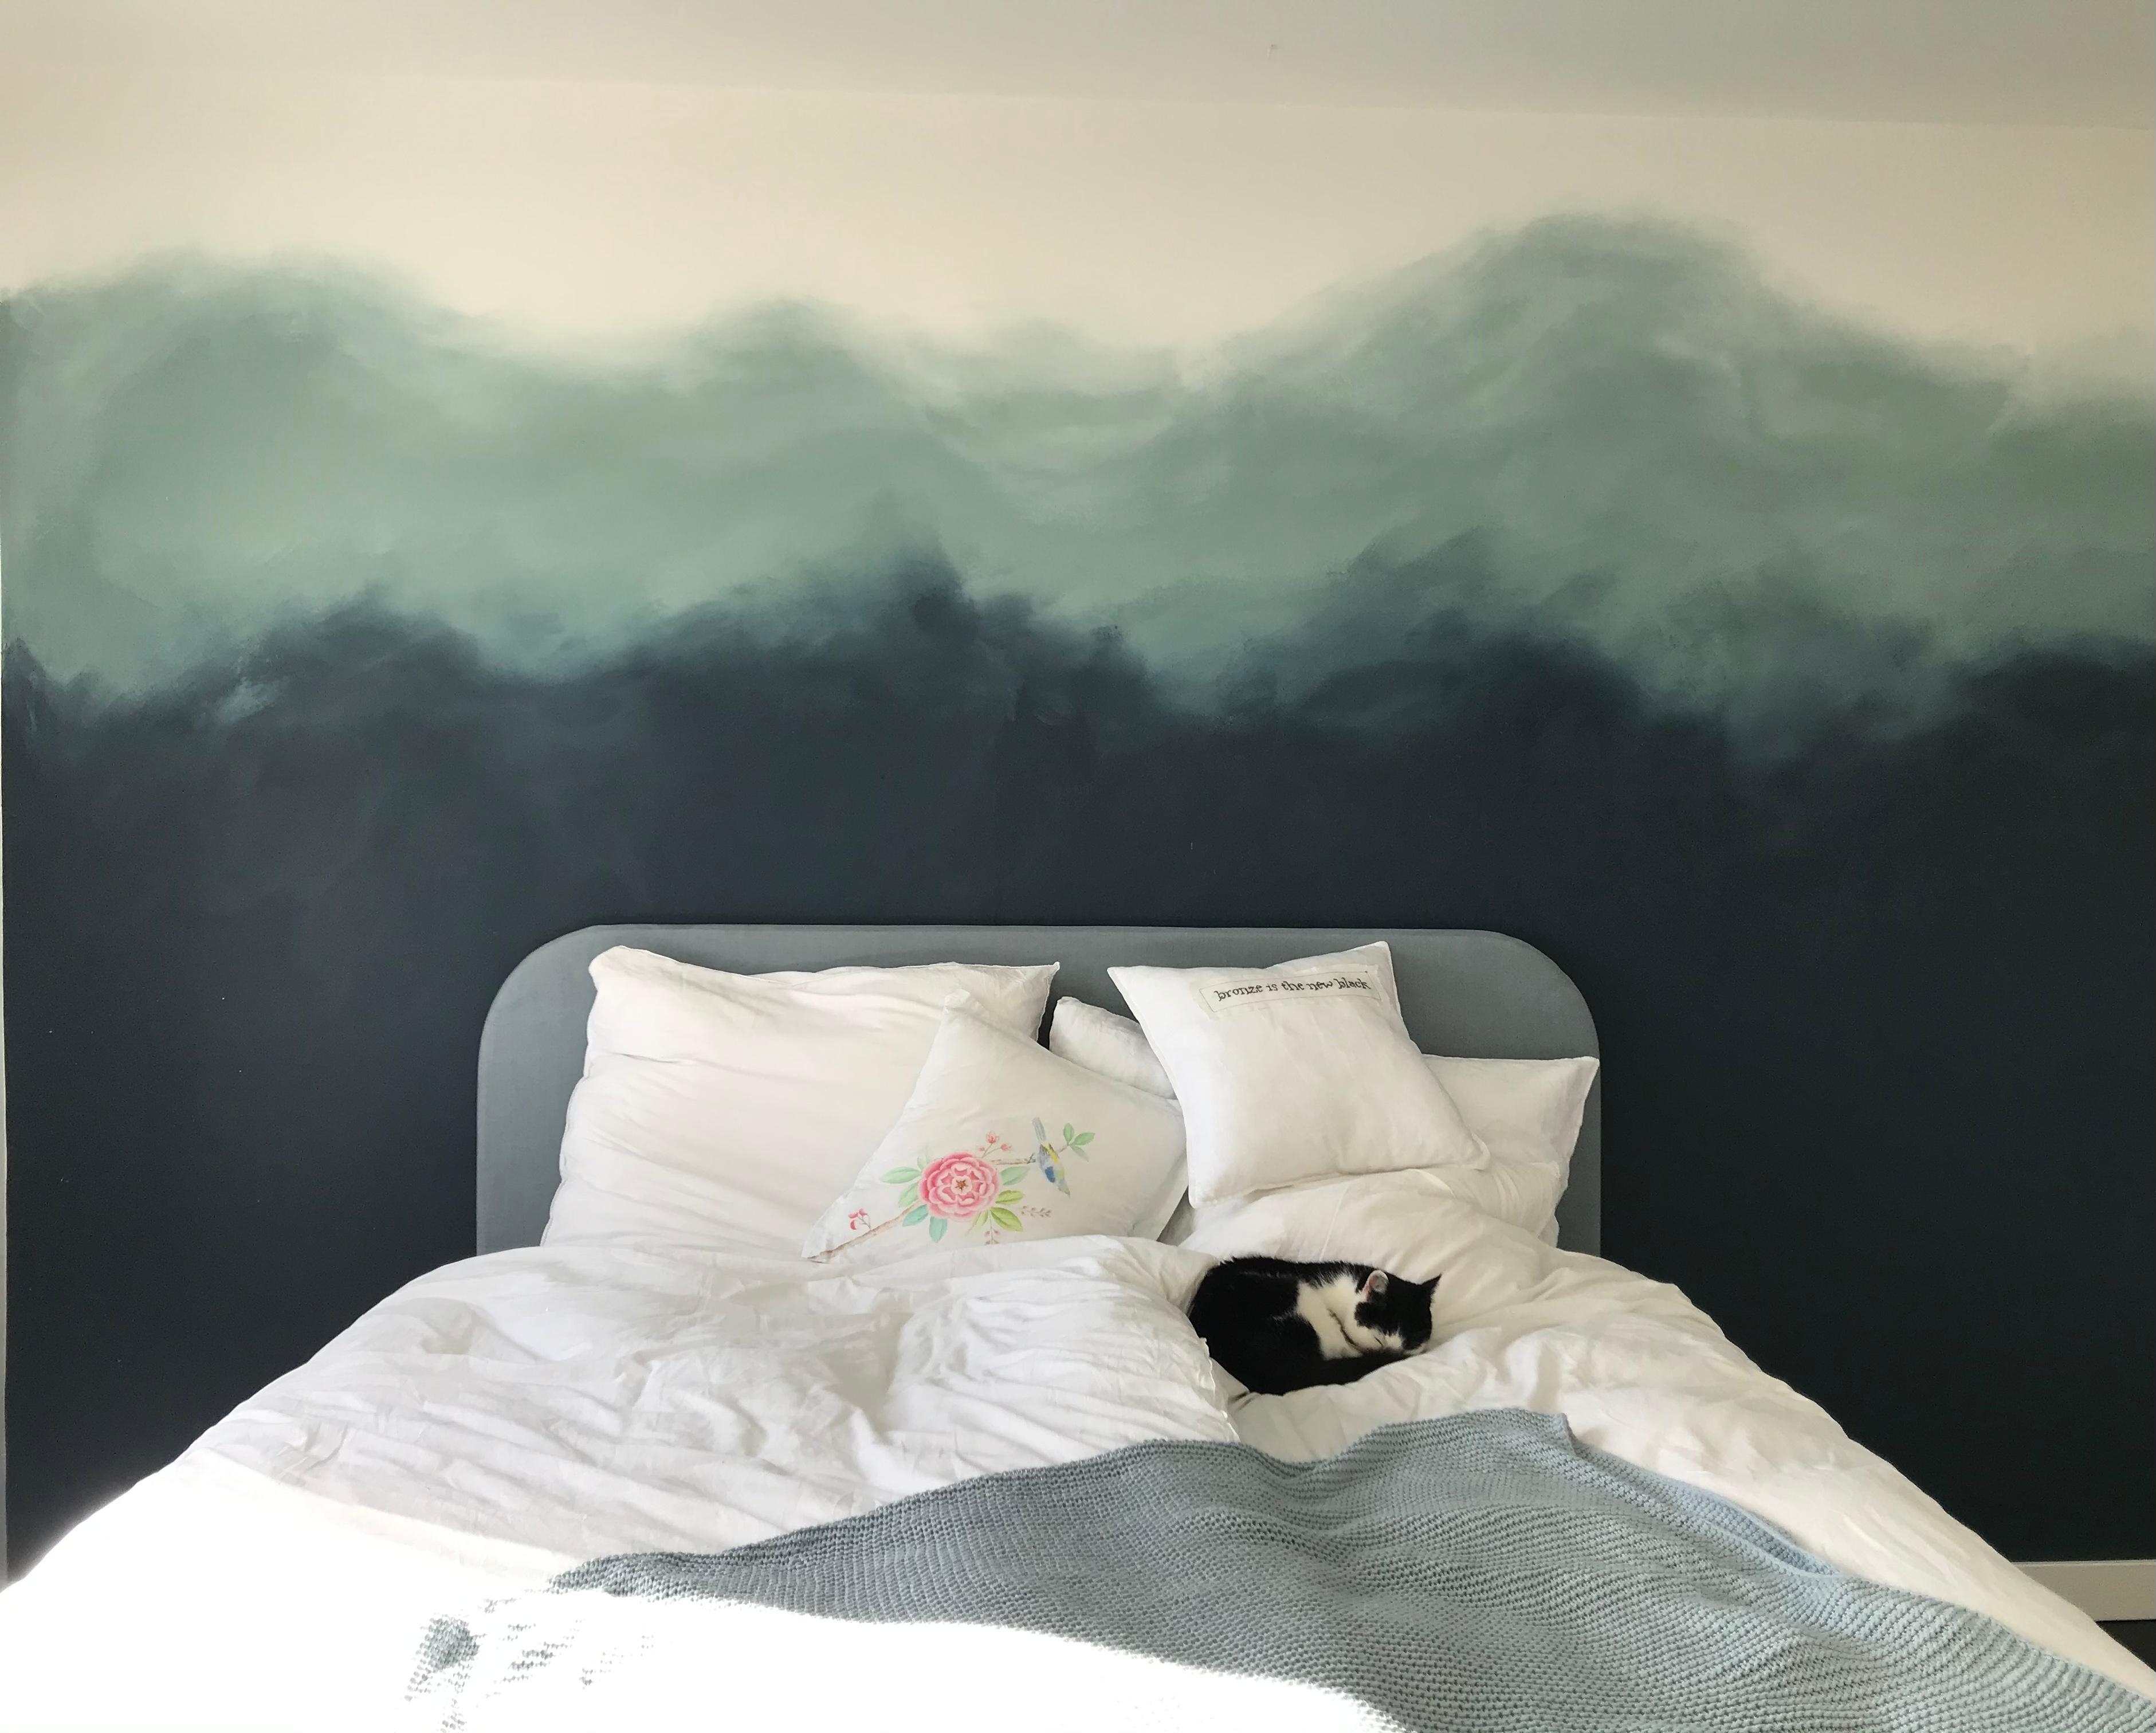 Neue Schlafzimmergestaltung- mit Model😉#ombre #maler #blau #kater #schlafzimmer #wandgestaltung